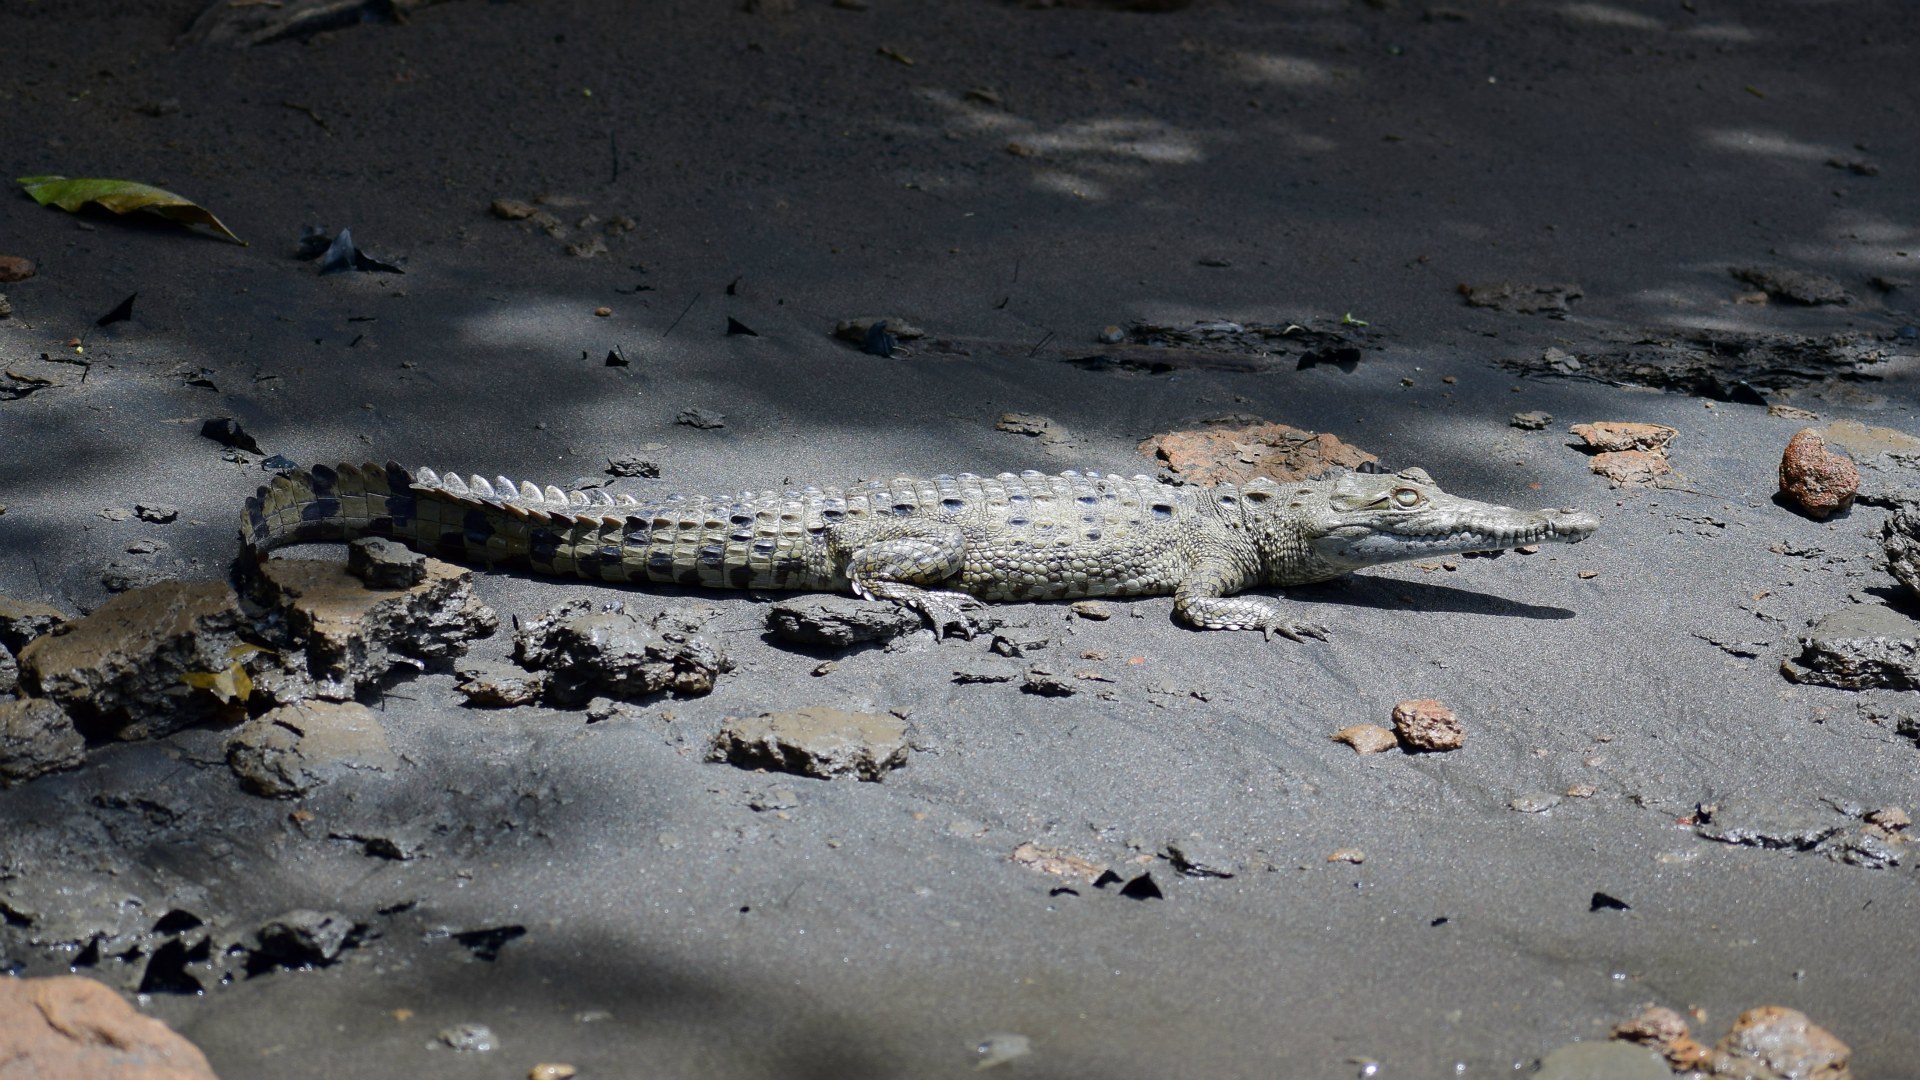 Young Crocodile, Rio Suerte